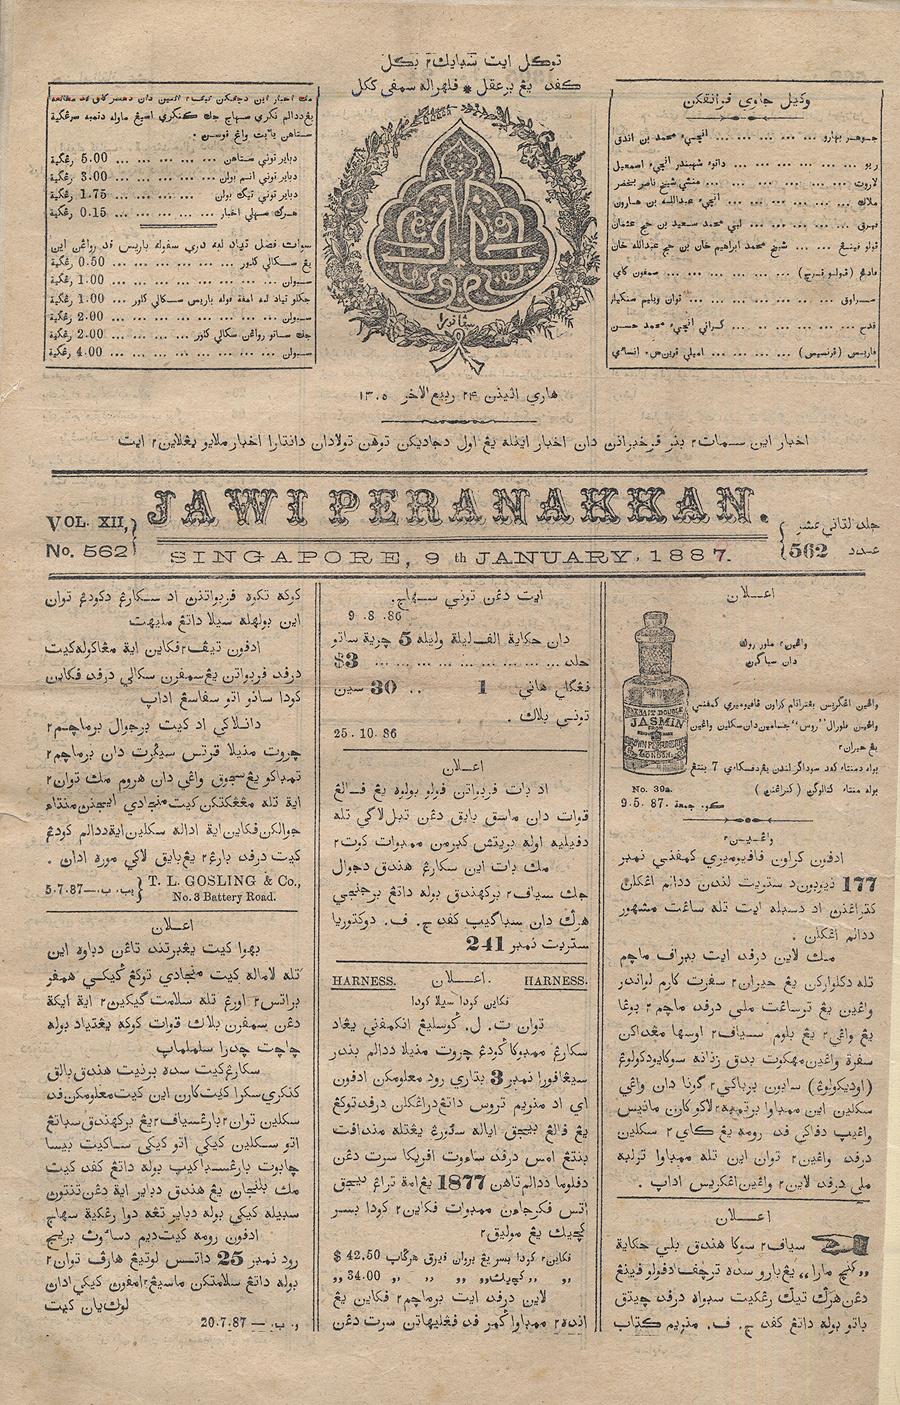 자위(Jawi) 페라나칸 신문

말레이 등지에서 최초로 발행된 자위어 신문인 ‘자위 페라나칸’ 신문.
